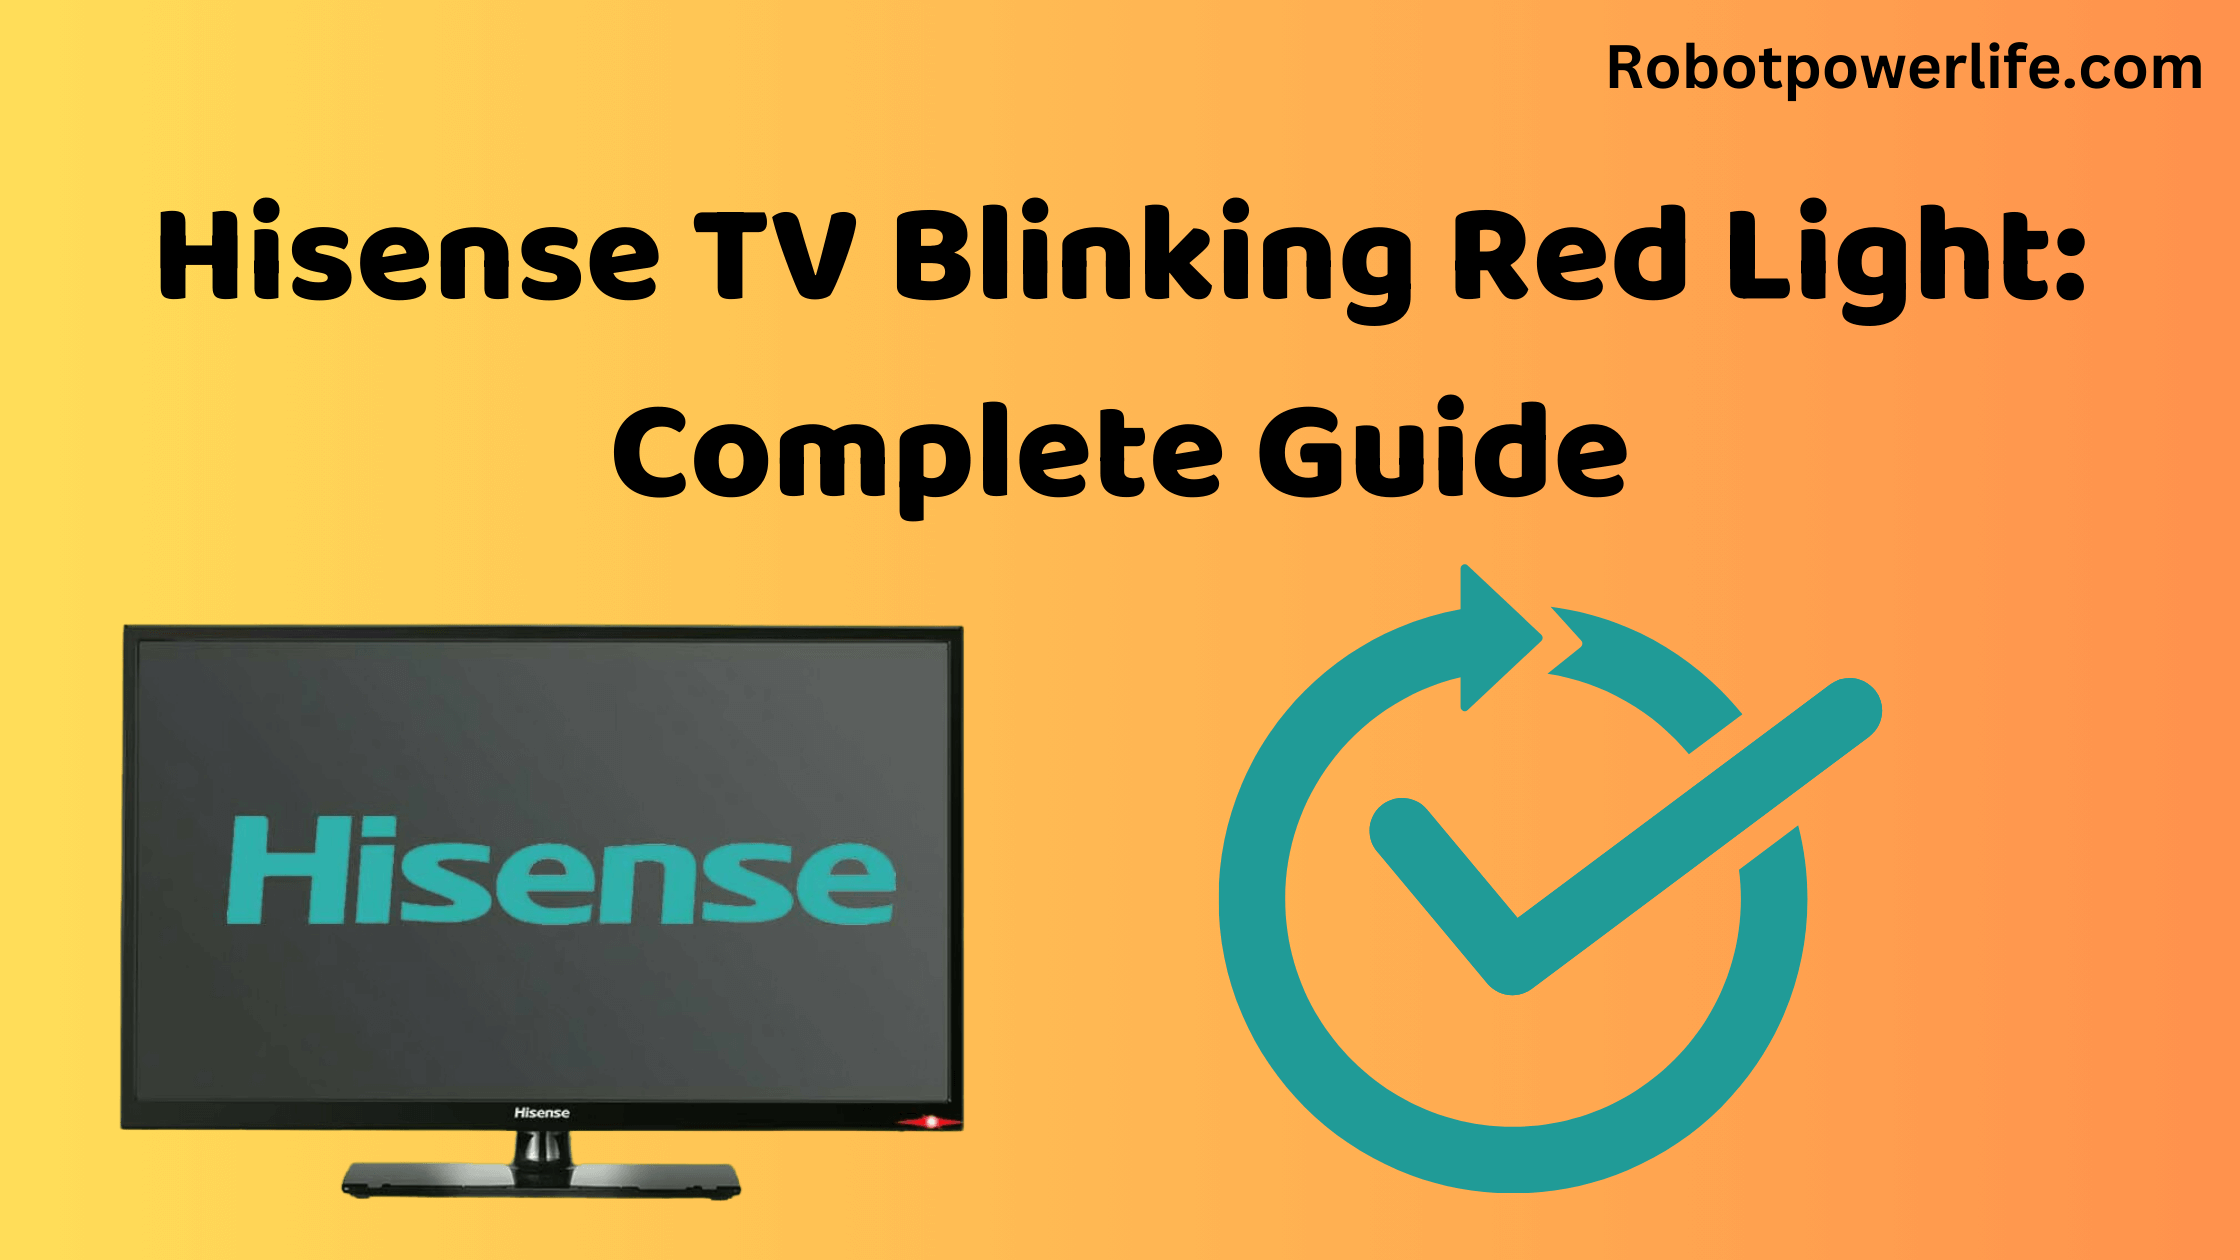 Hisense TV Blinking Red Light: Complete Guide